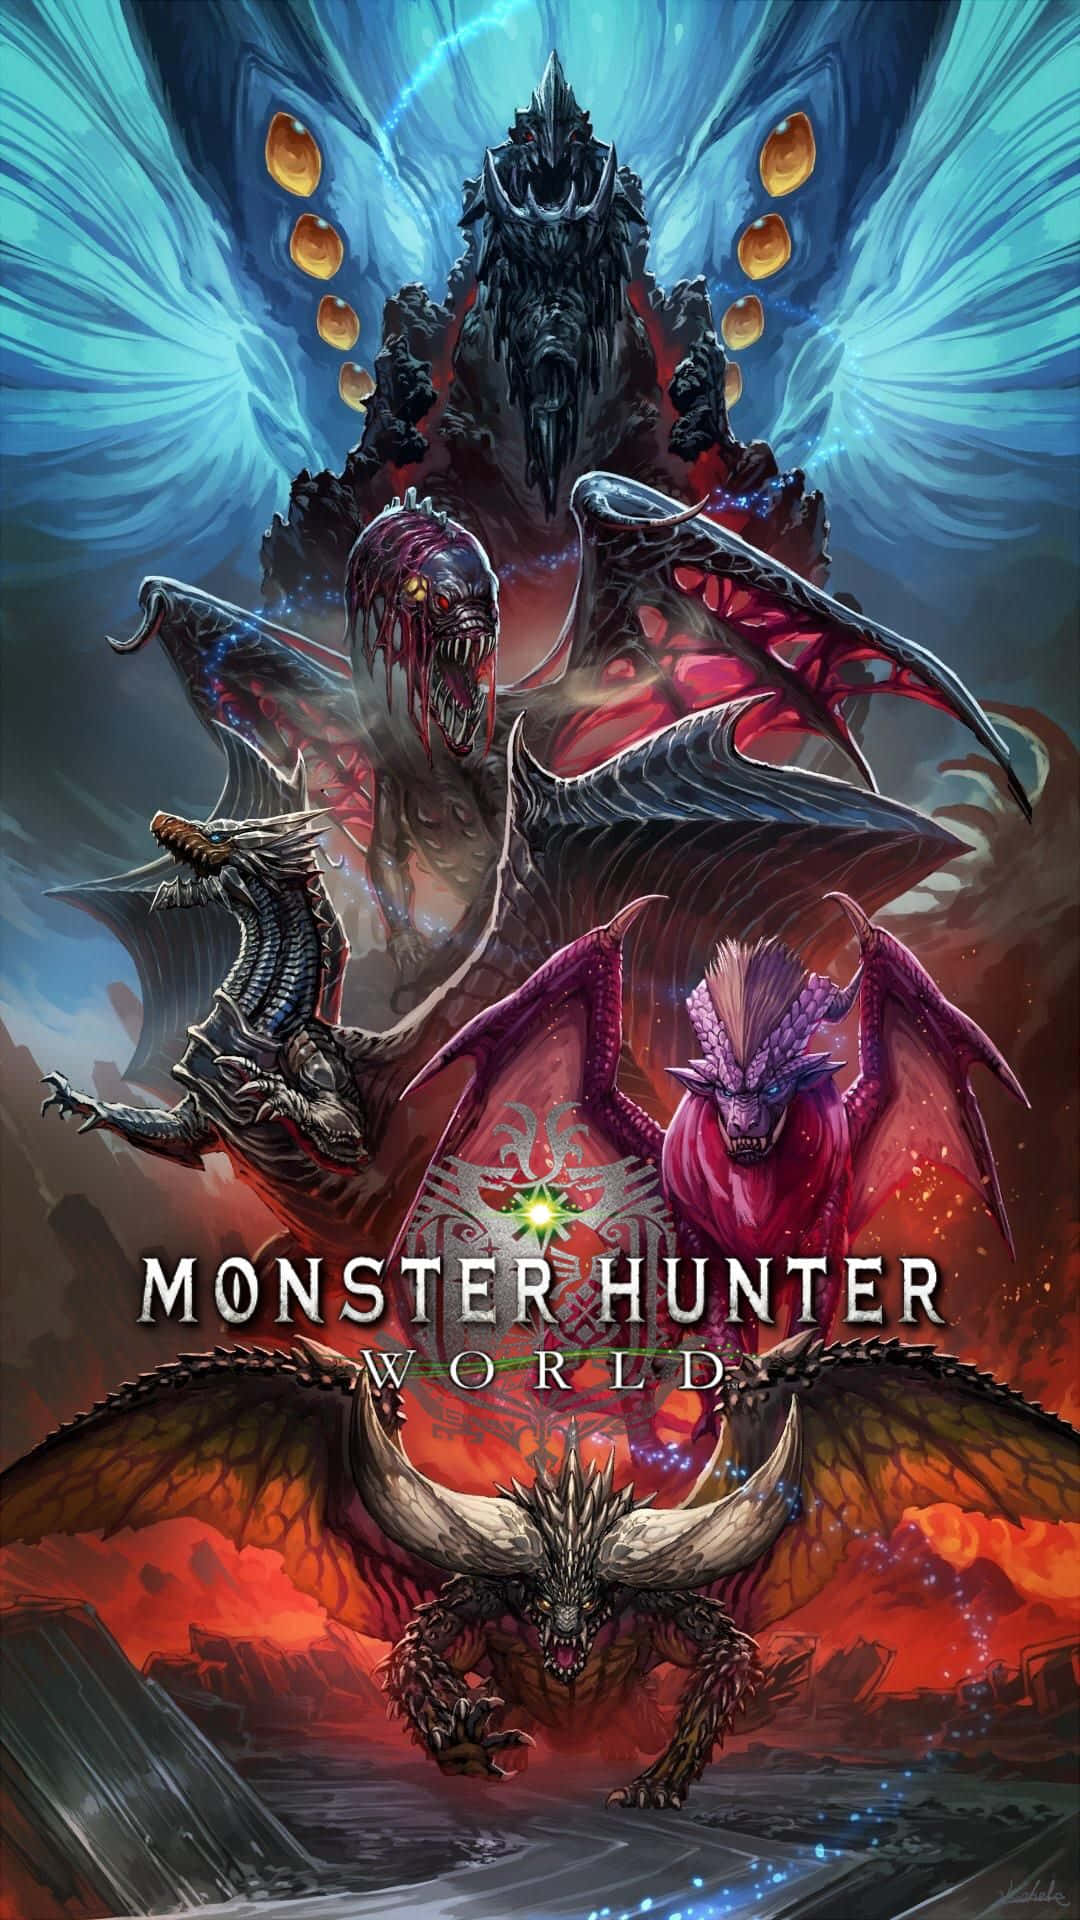 Monsterhunter World - Pc: Monster Hunter World - Pc